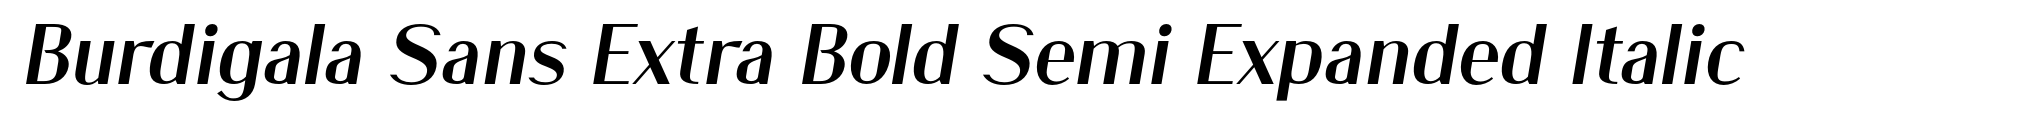 Burdigala Sans Extra Bold Semi Expanded Italic image